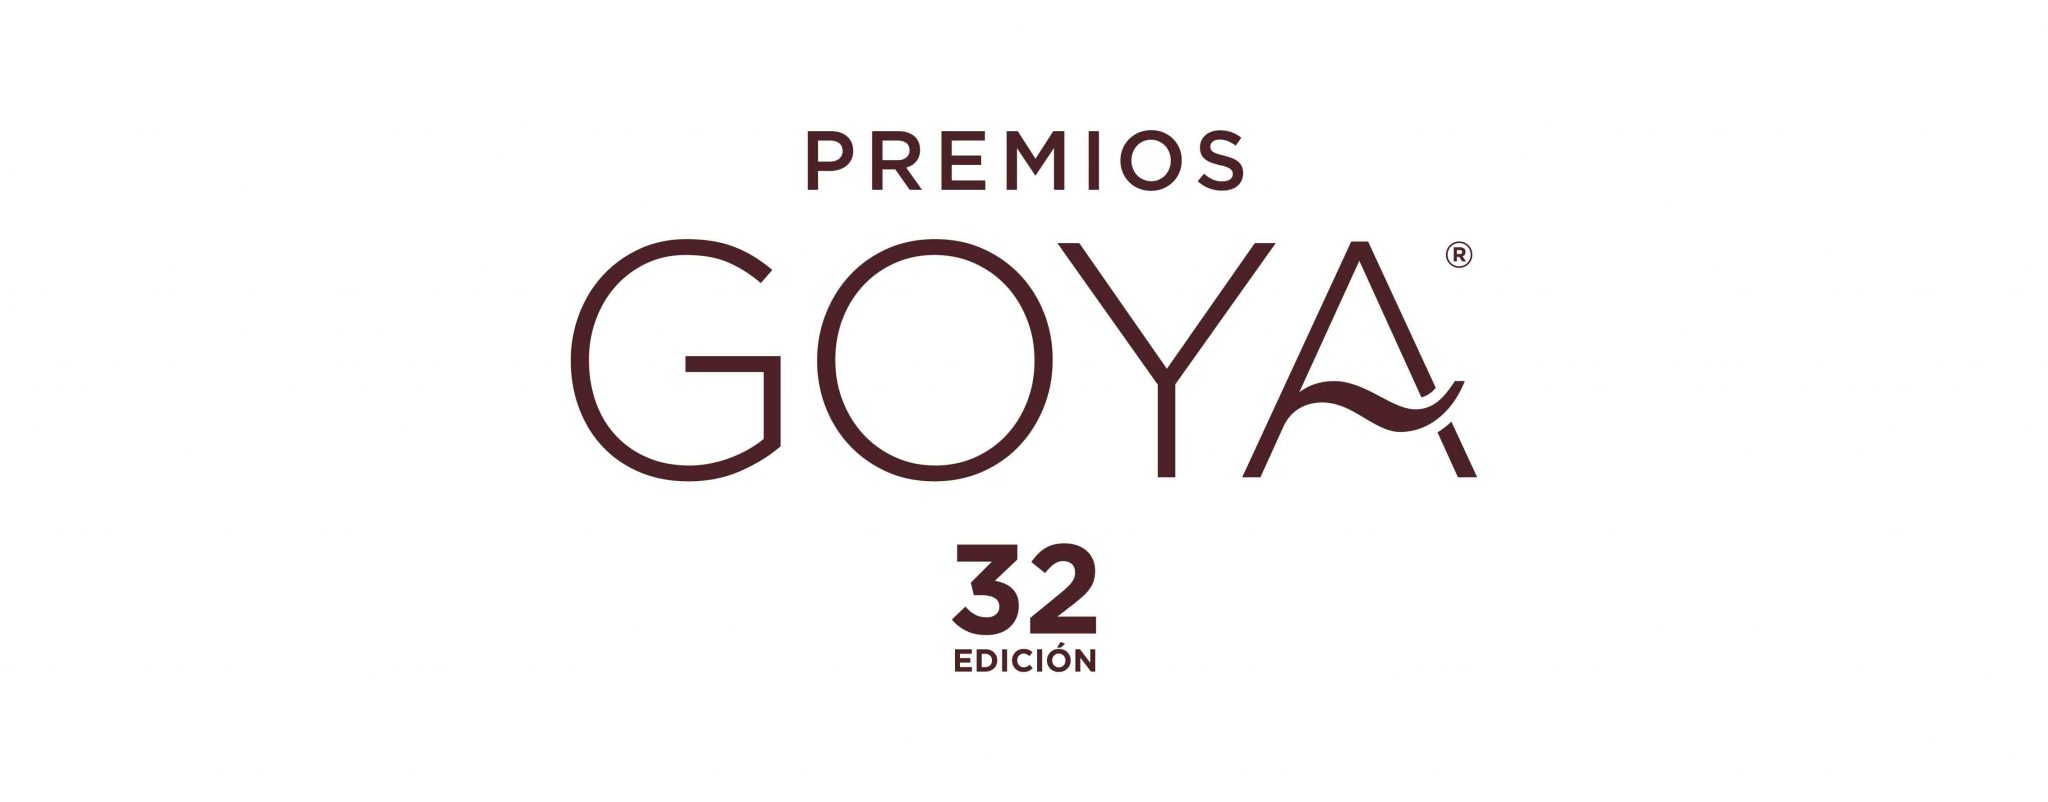 Lista completa de nominados a los Goya 2018